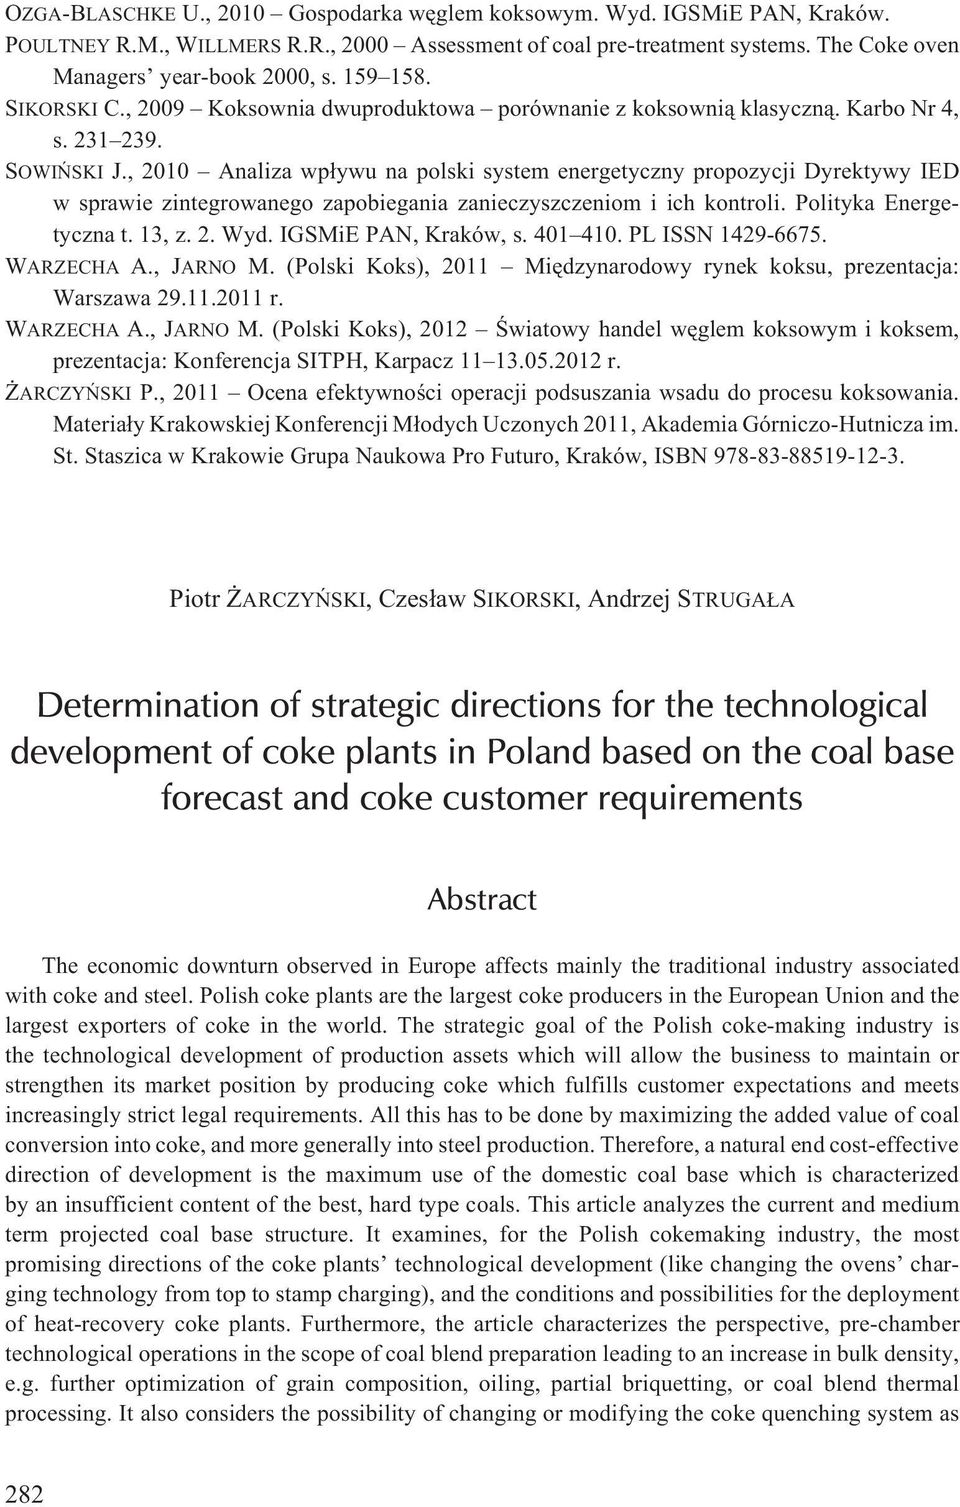 , 2010 Analiza wp³ywu na polski system energetyczny propozycji Dyrektywy IED w sprawie zintegrowanego zapobiegania zanieczyszczeniom i ich kontroli. Polityka Energetyczna t. 13, z. 2. Wyd.